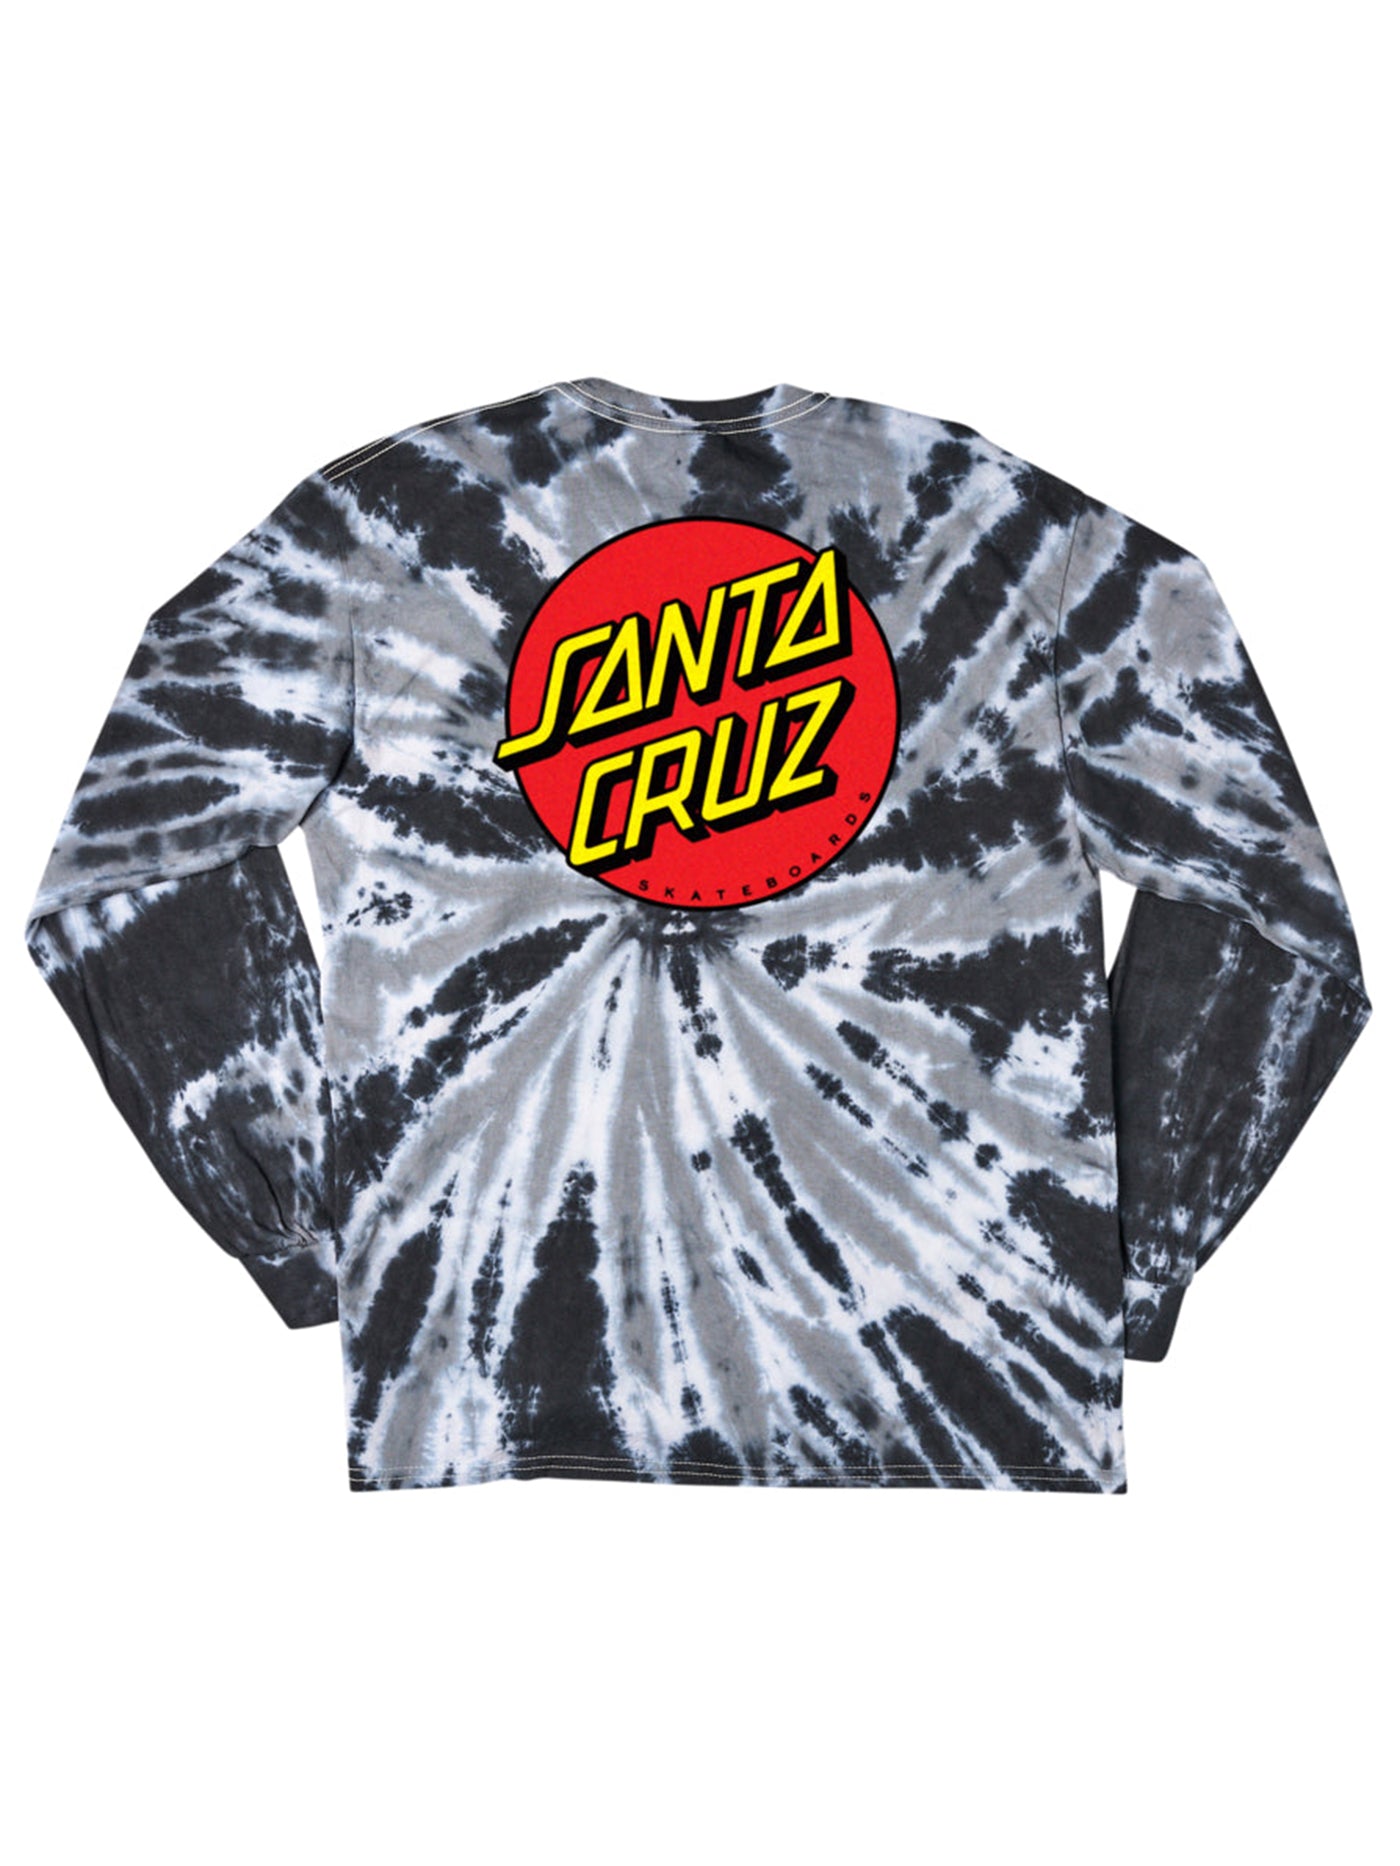 Santa Cruz Classic Dot Long Sleeve T-Shirt